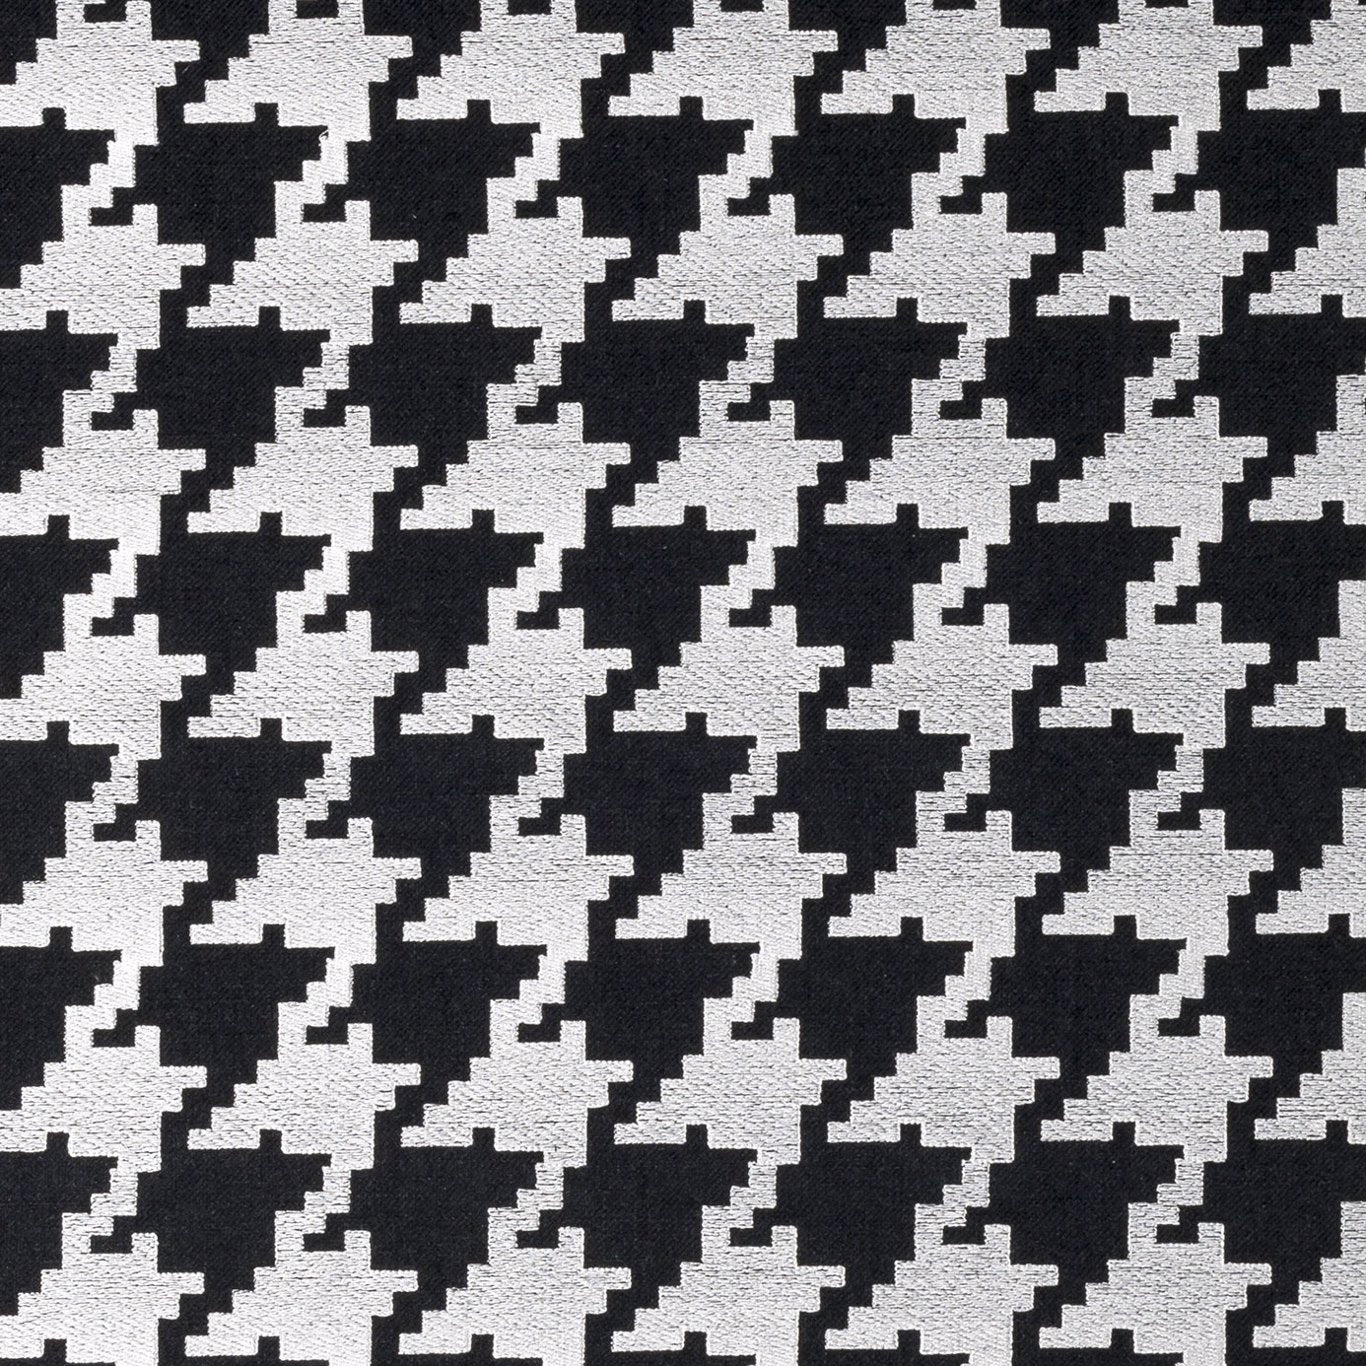 Bw1011 Fabric by Clarke & Clarke - F0883/01 - Black/White